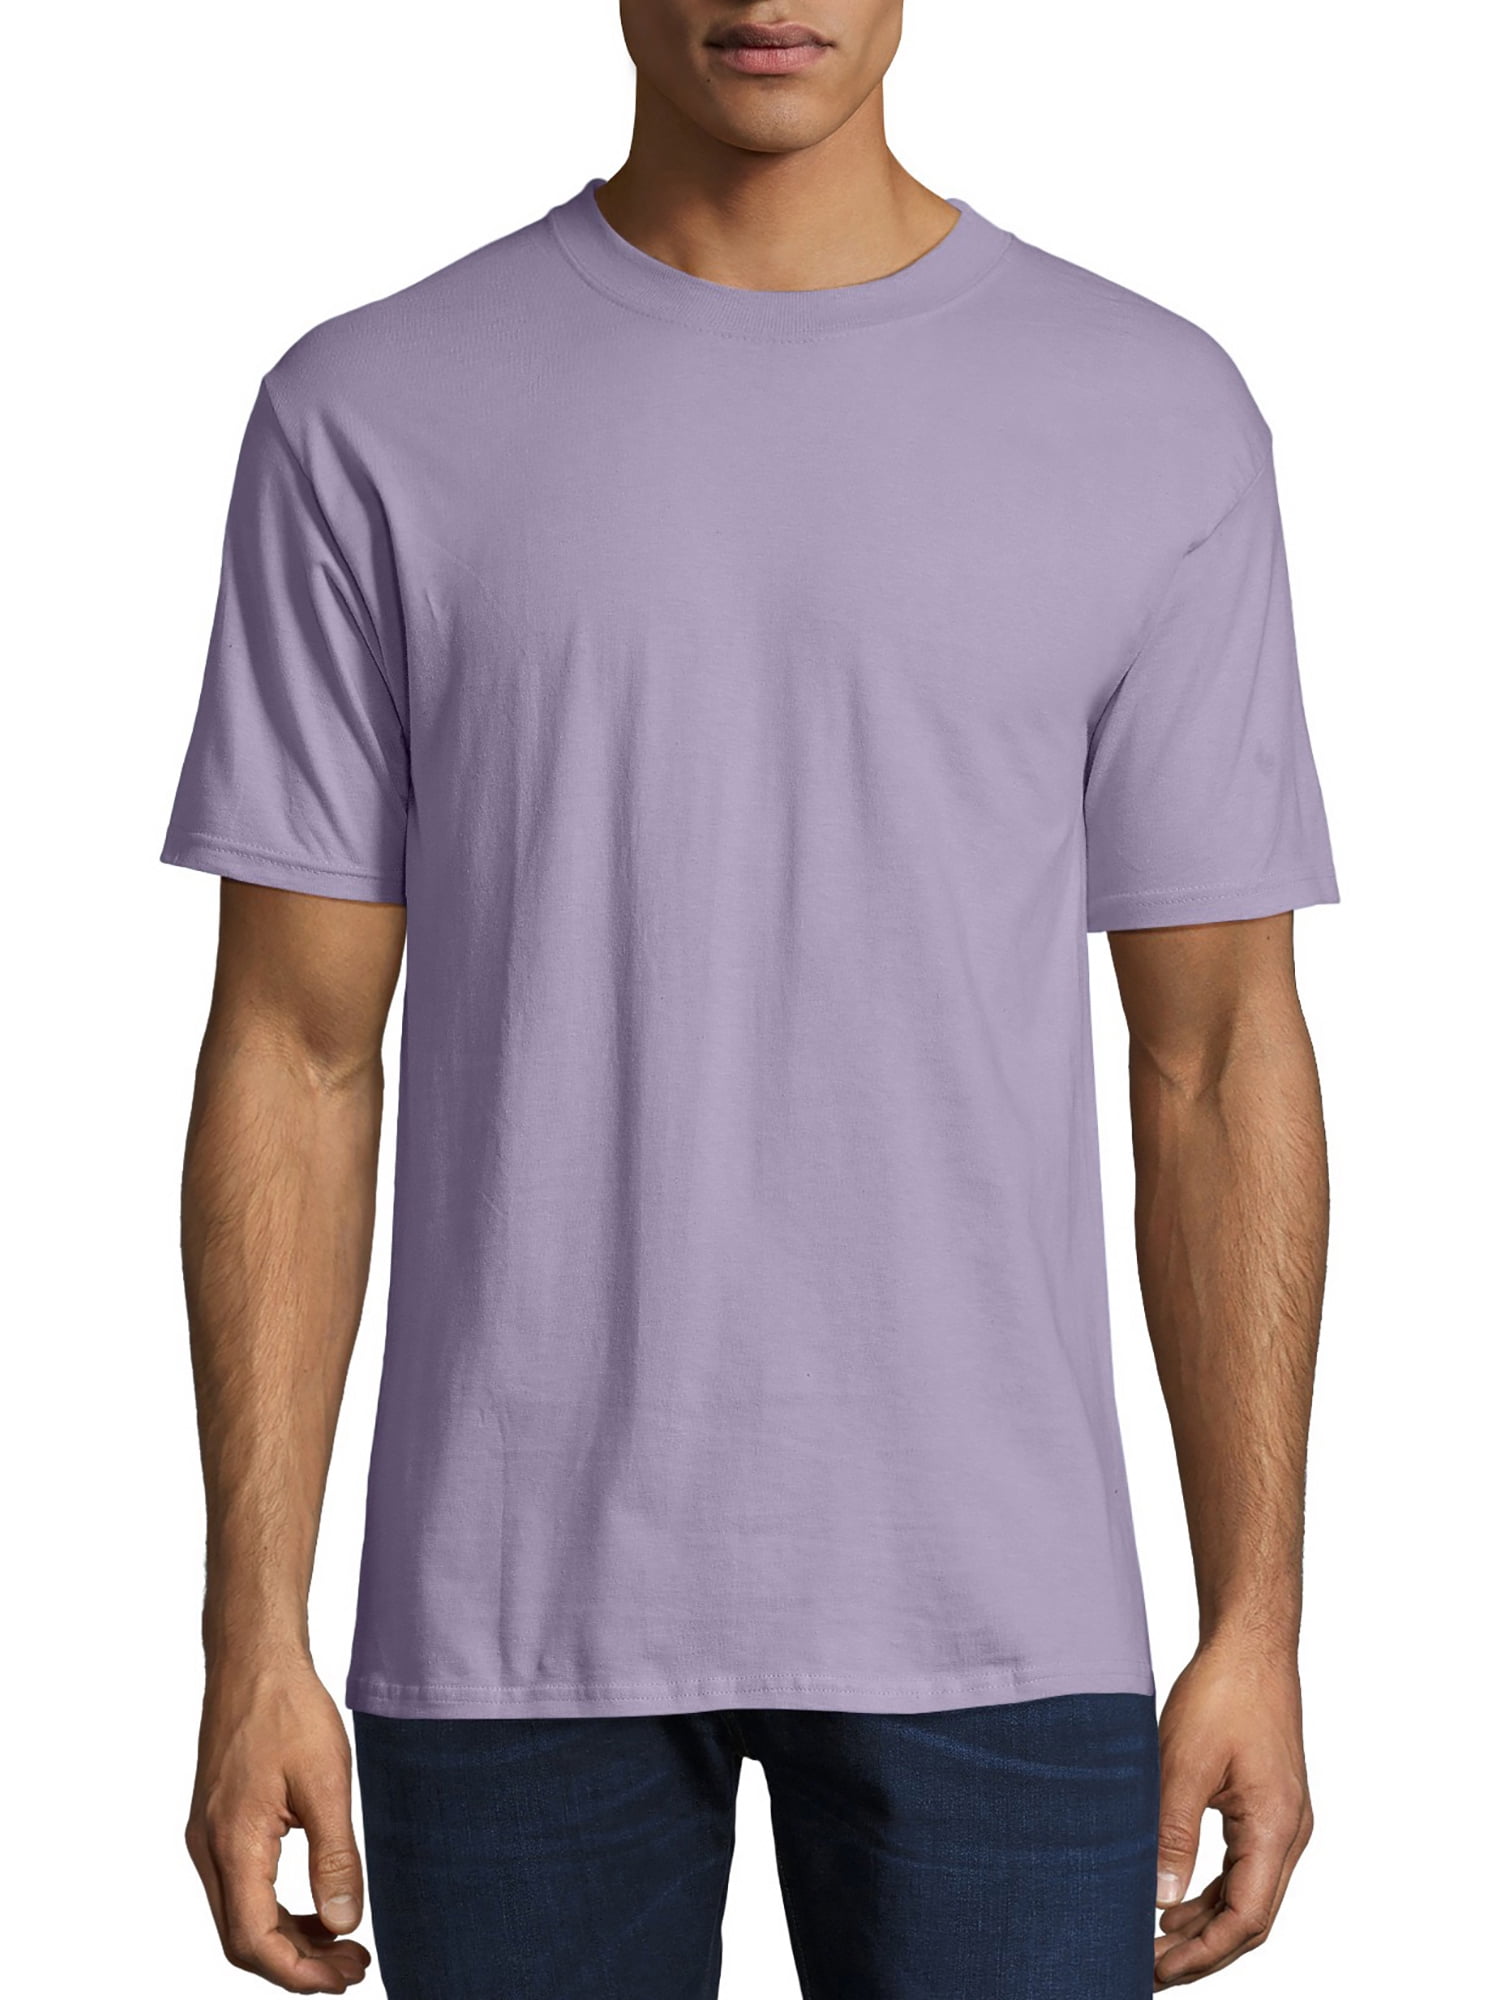 6XL Hanes Men's Comfort Soft Short Sleeve Shirt